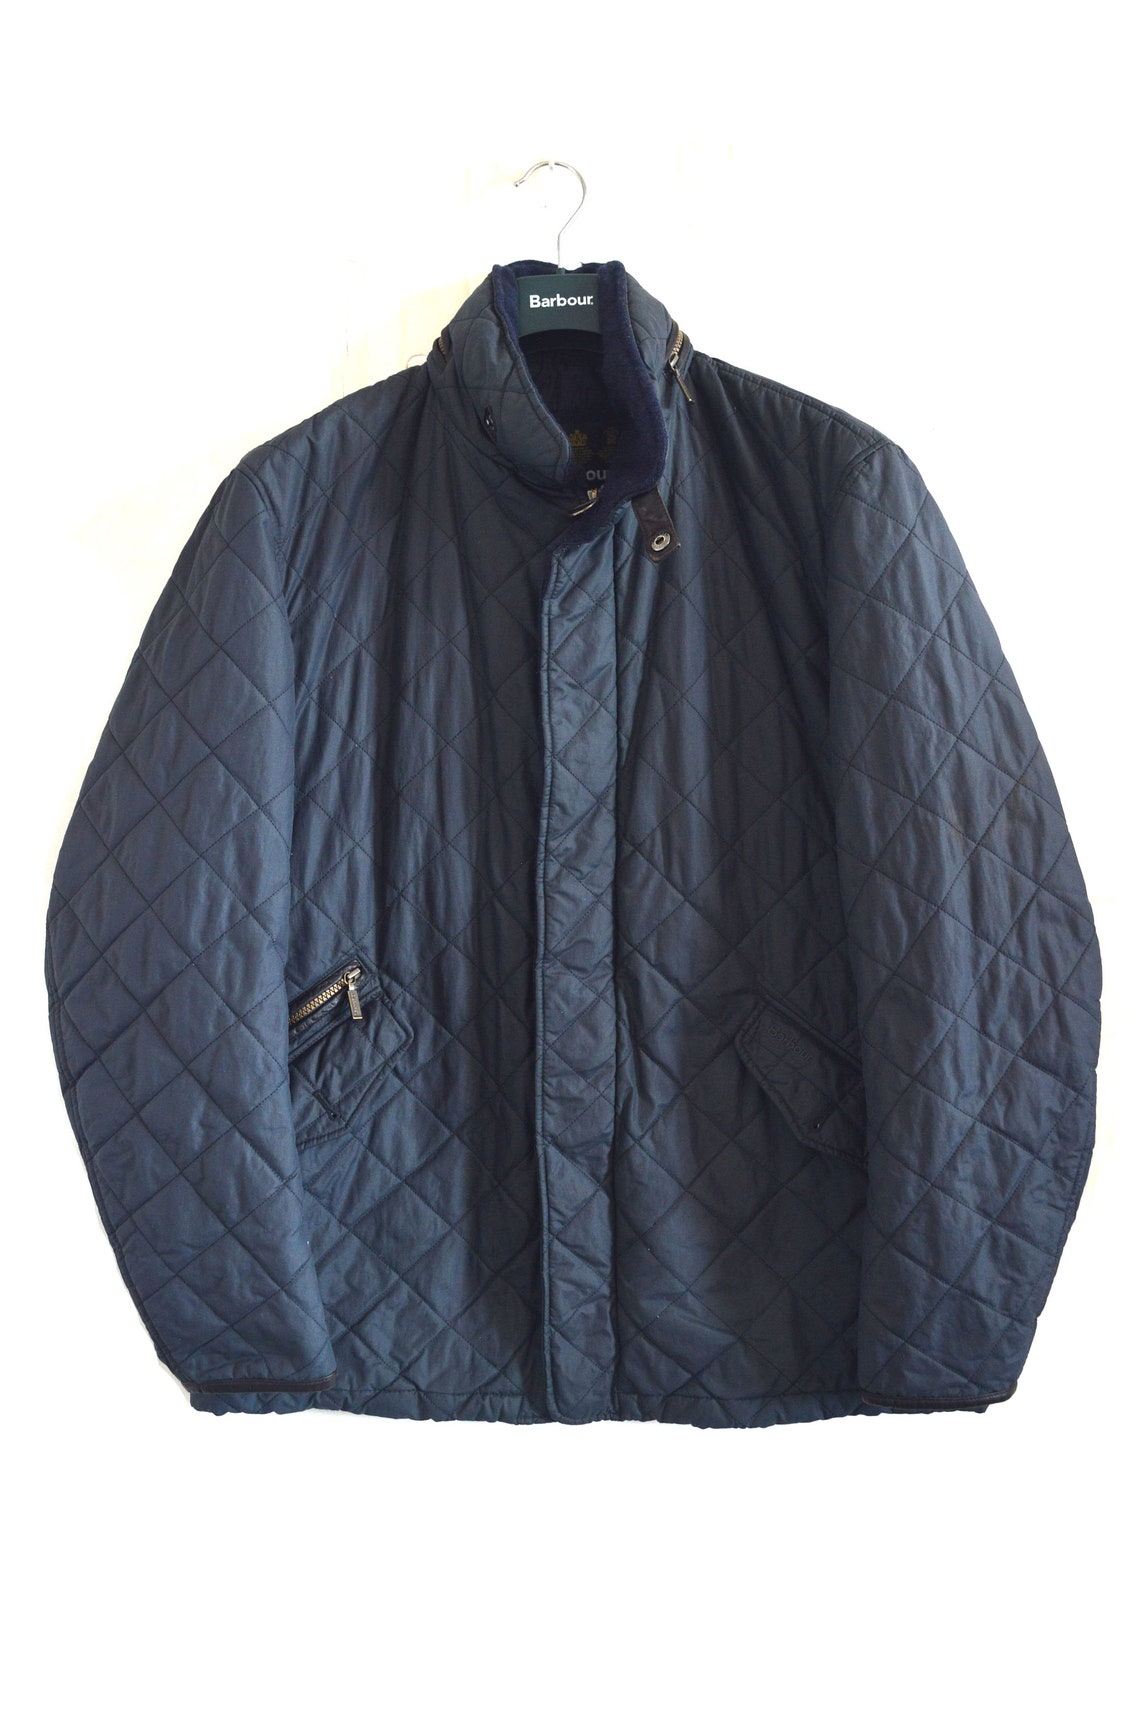 Barbour Greatcoat Binkworth Quilted Jacket Navy Size Men's | Etsy